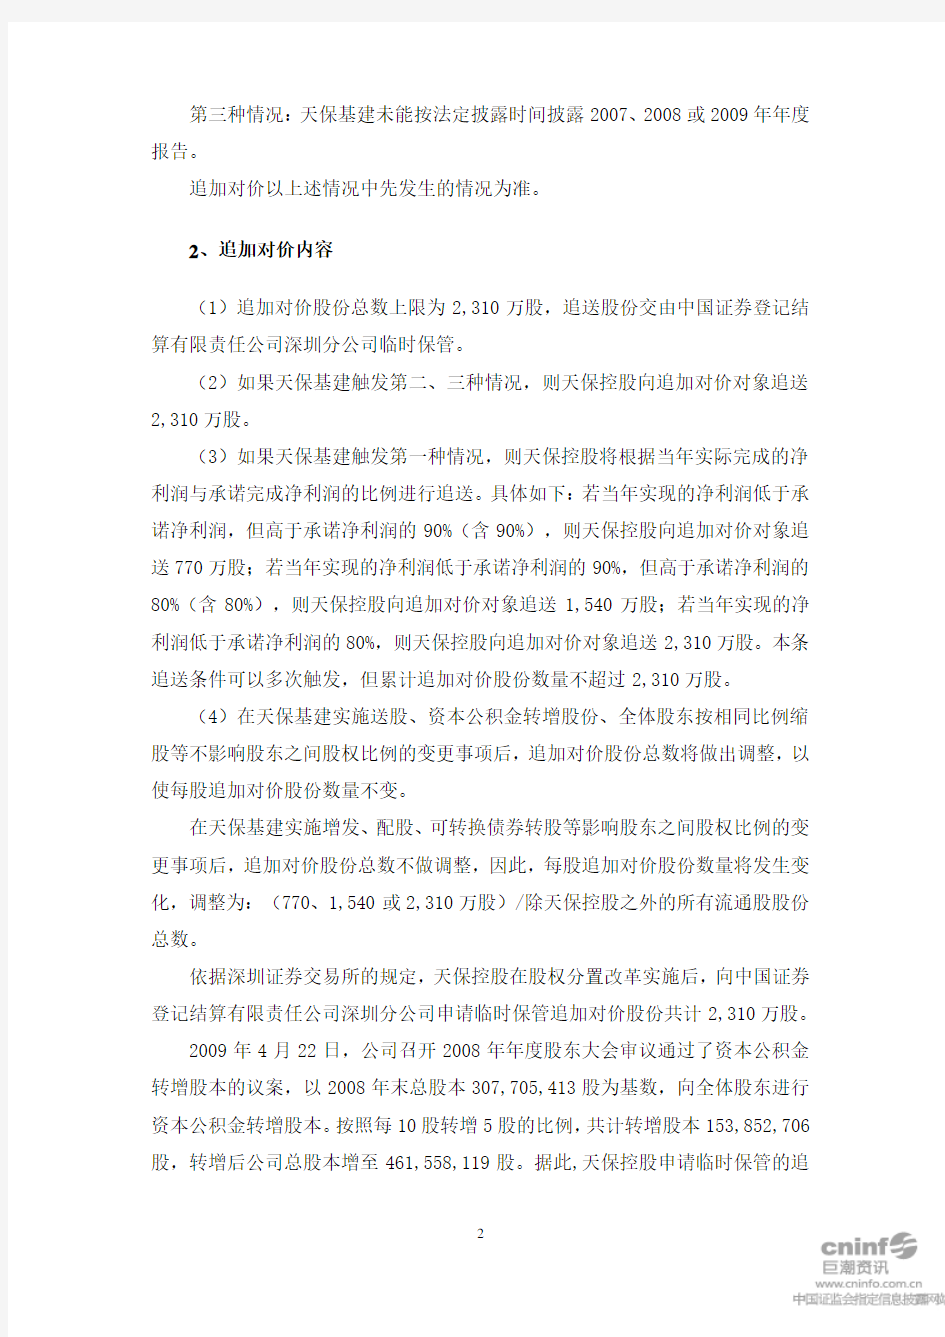 渤海证券股份有限公司关于天津天保基建股份有限公司股权分置改革追加对价股份解除临时保管的核查意见